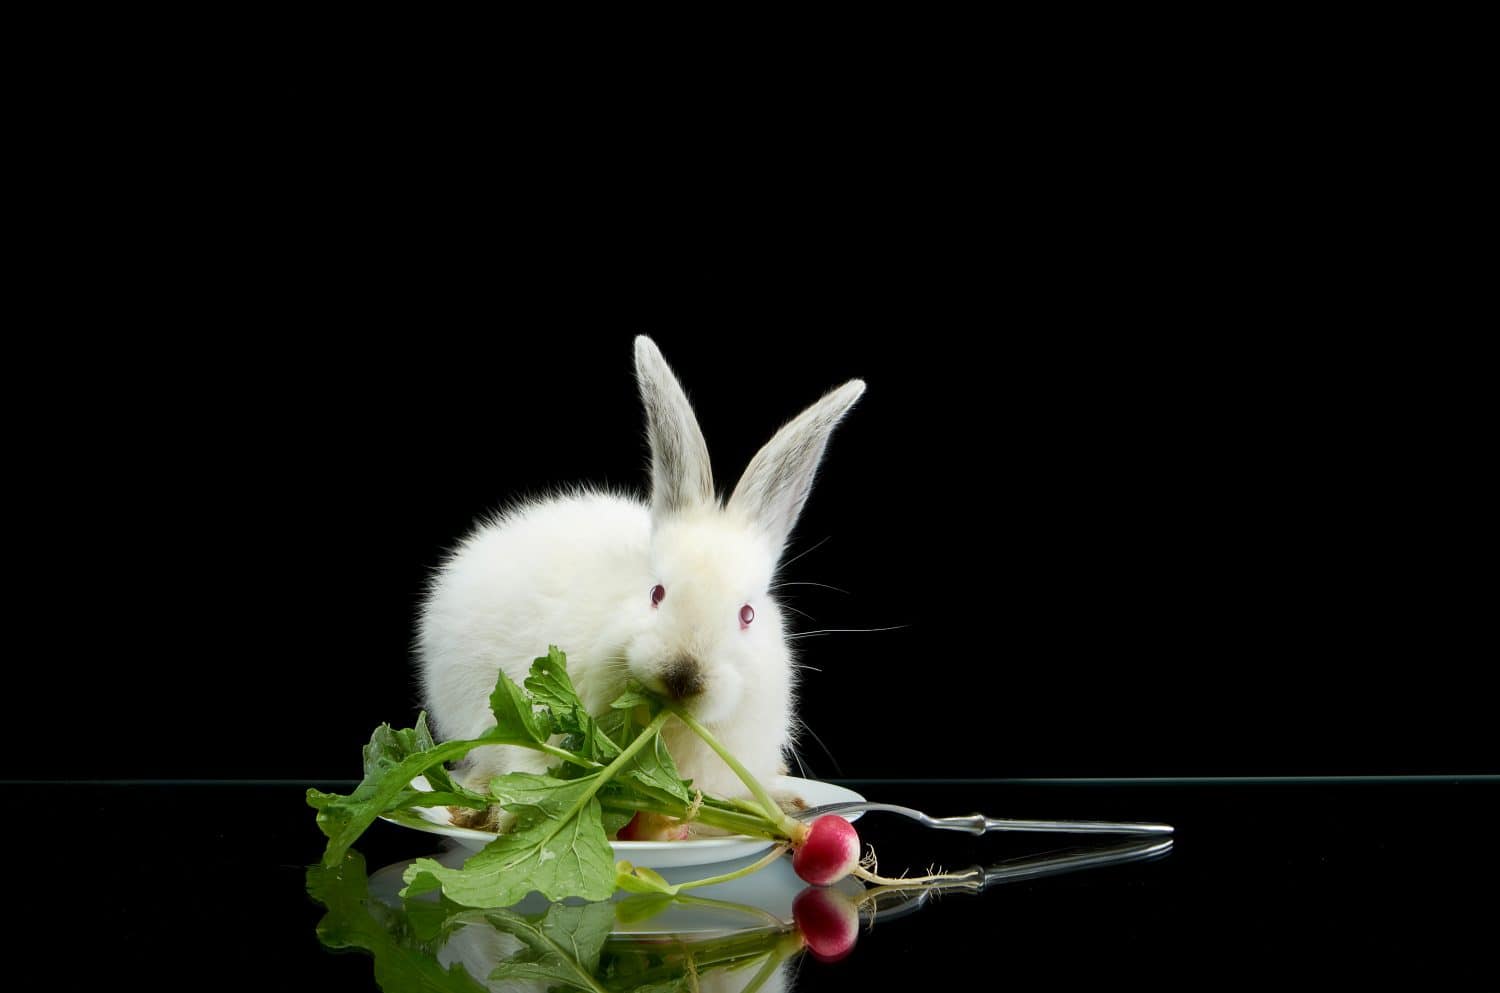 Giovane coniglio bianco che mangia ravanello in piatto bianco su fondo nero